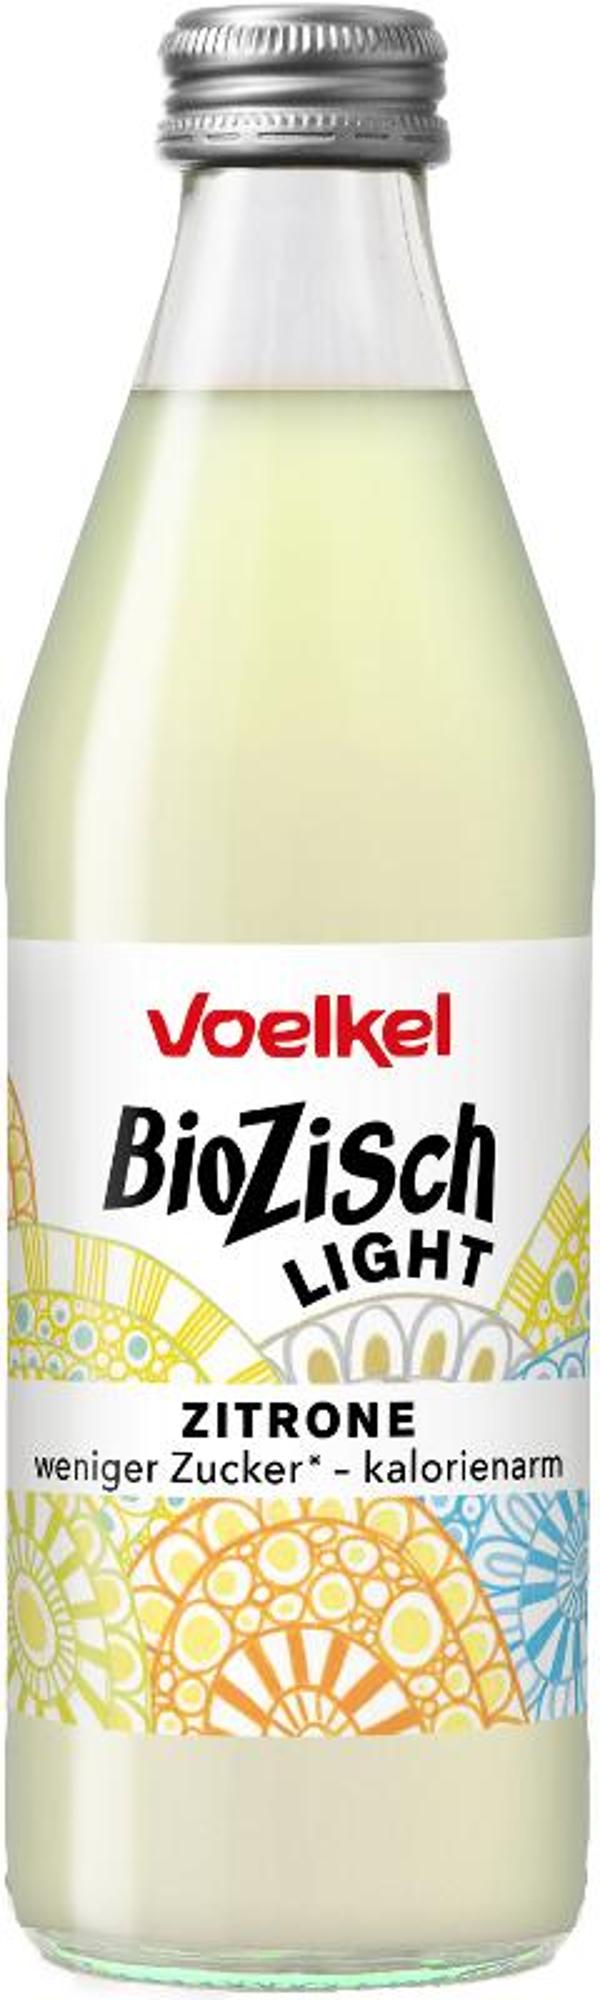 Produktfoto zu BioZisch light Zitrone 0,33l